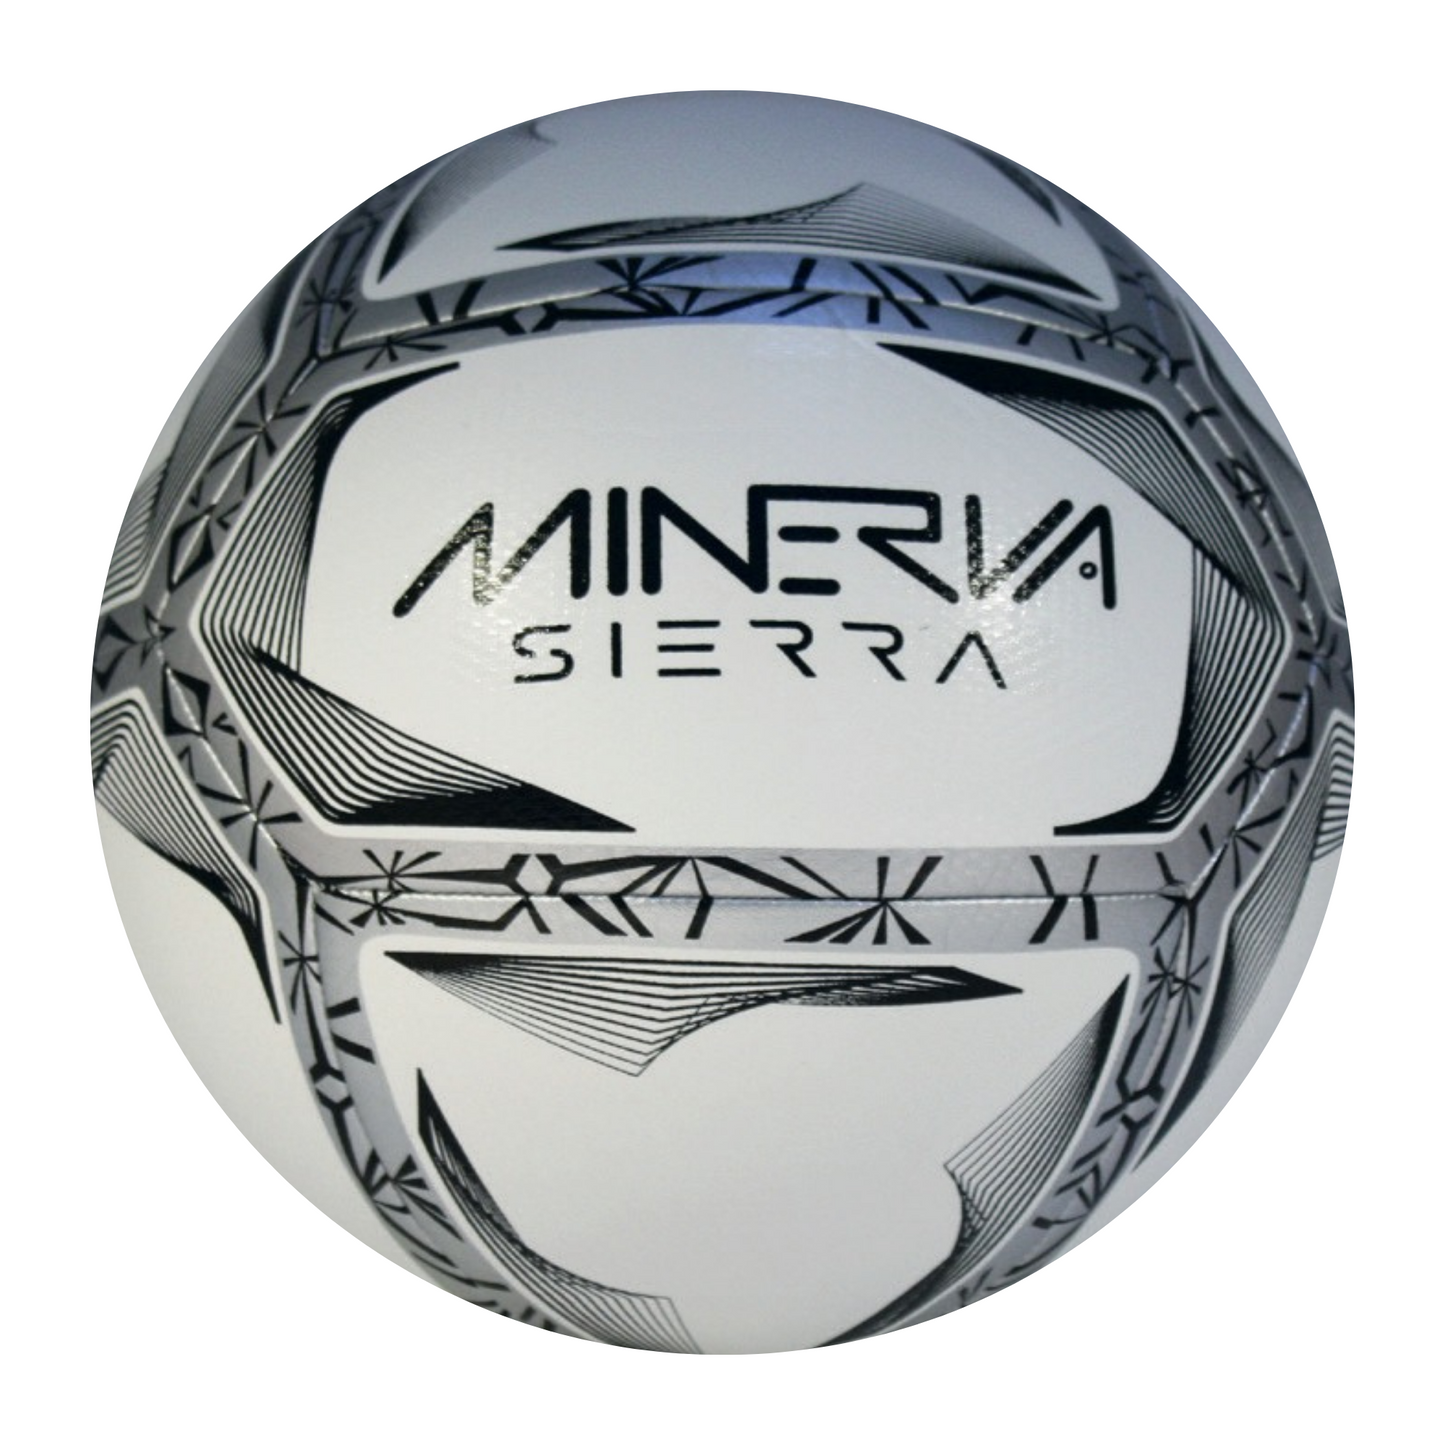 Minerva Sierra Football